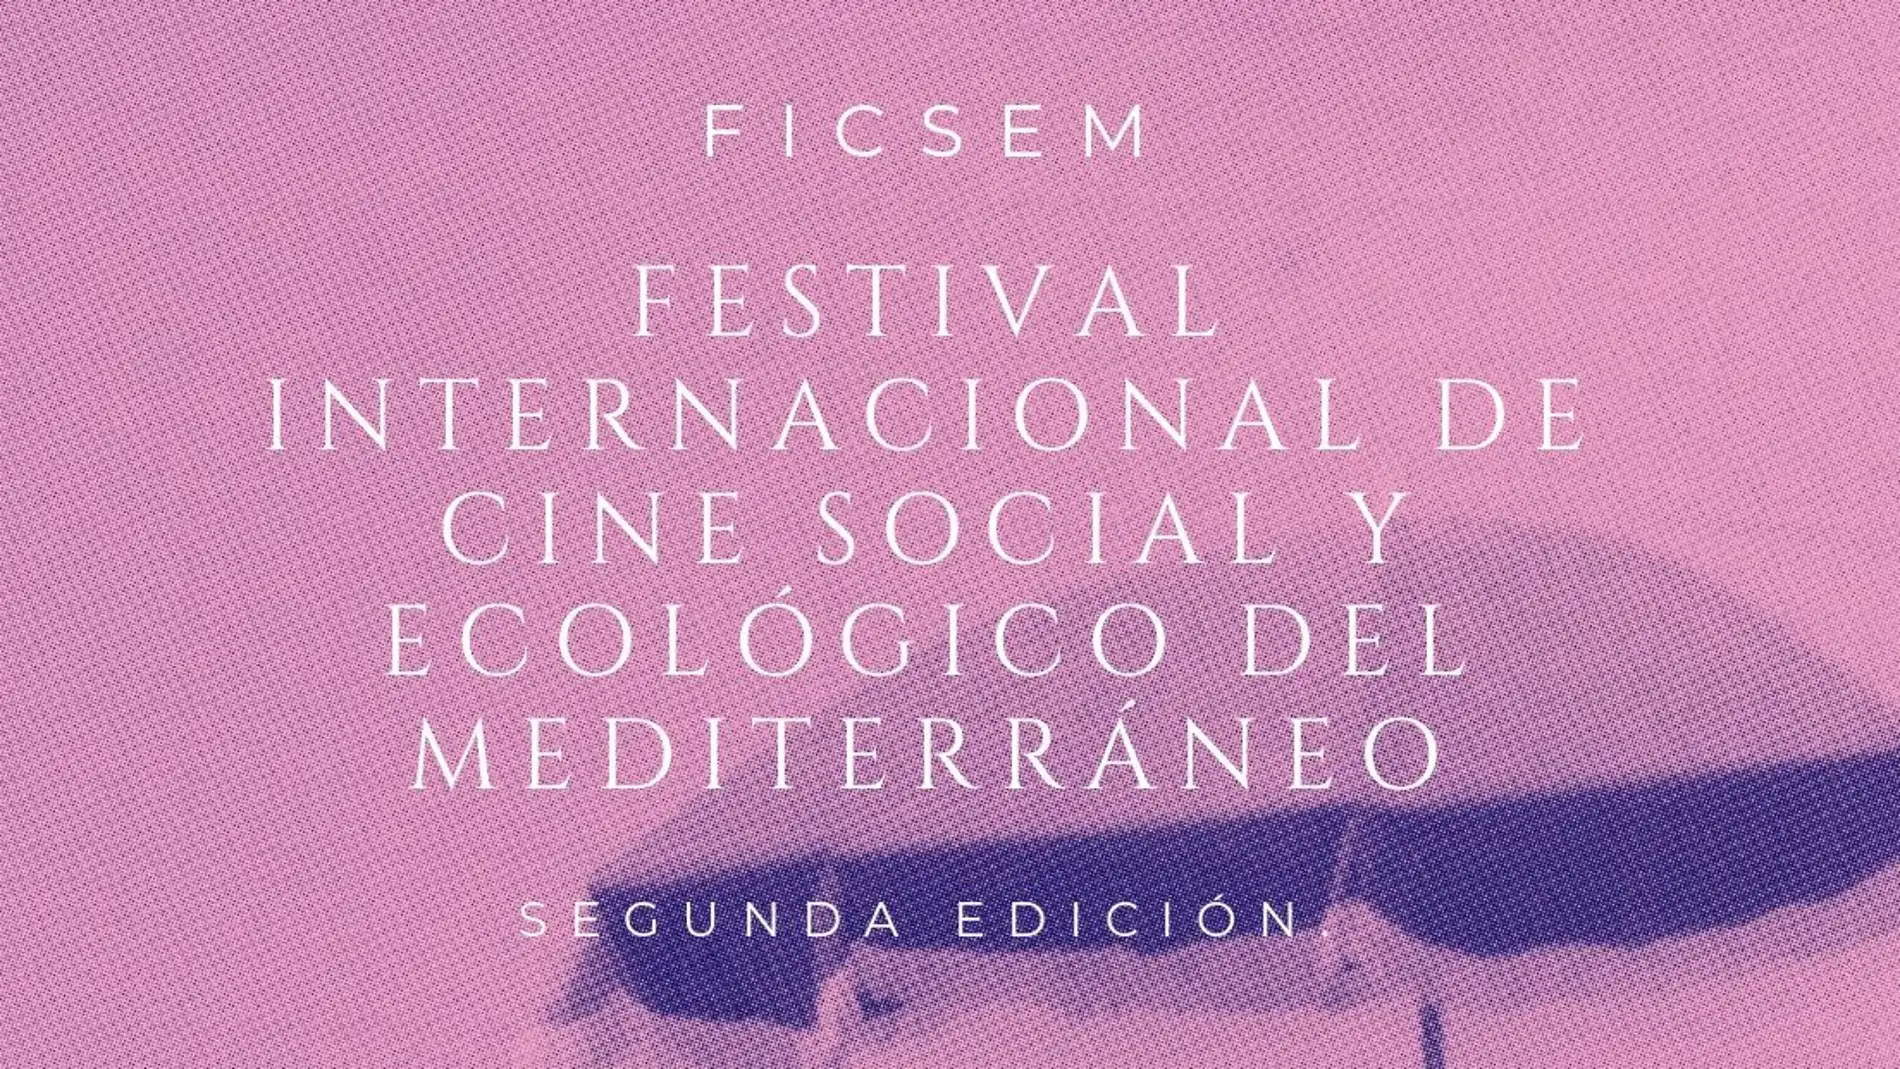 Segunda edición festival internacional de cine social y ecológico del mediterráneo comienzo 22 septiembre 